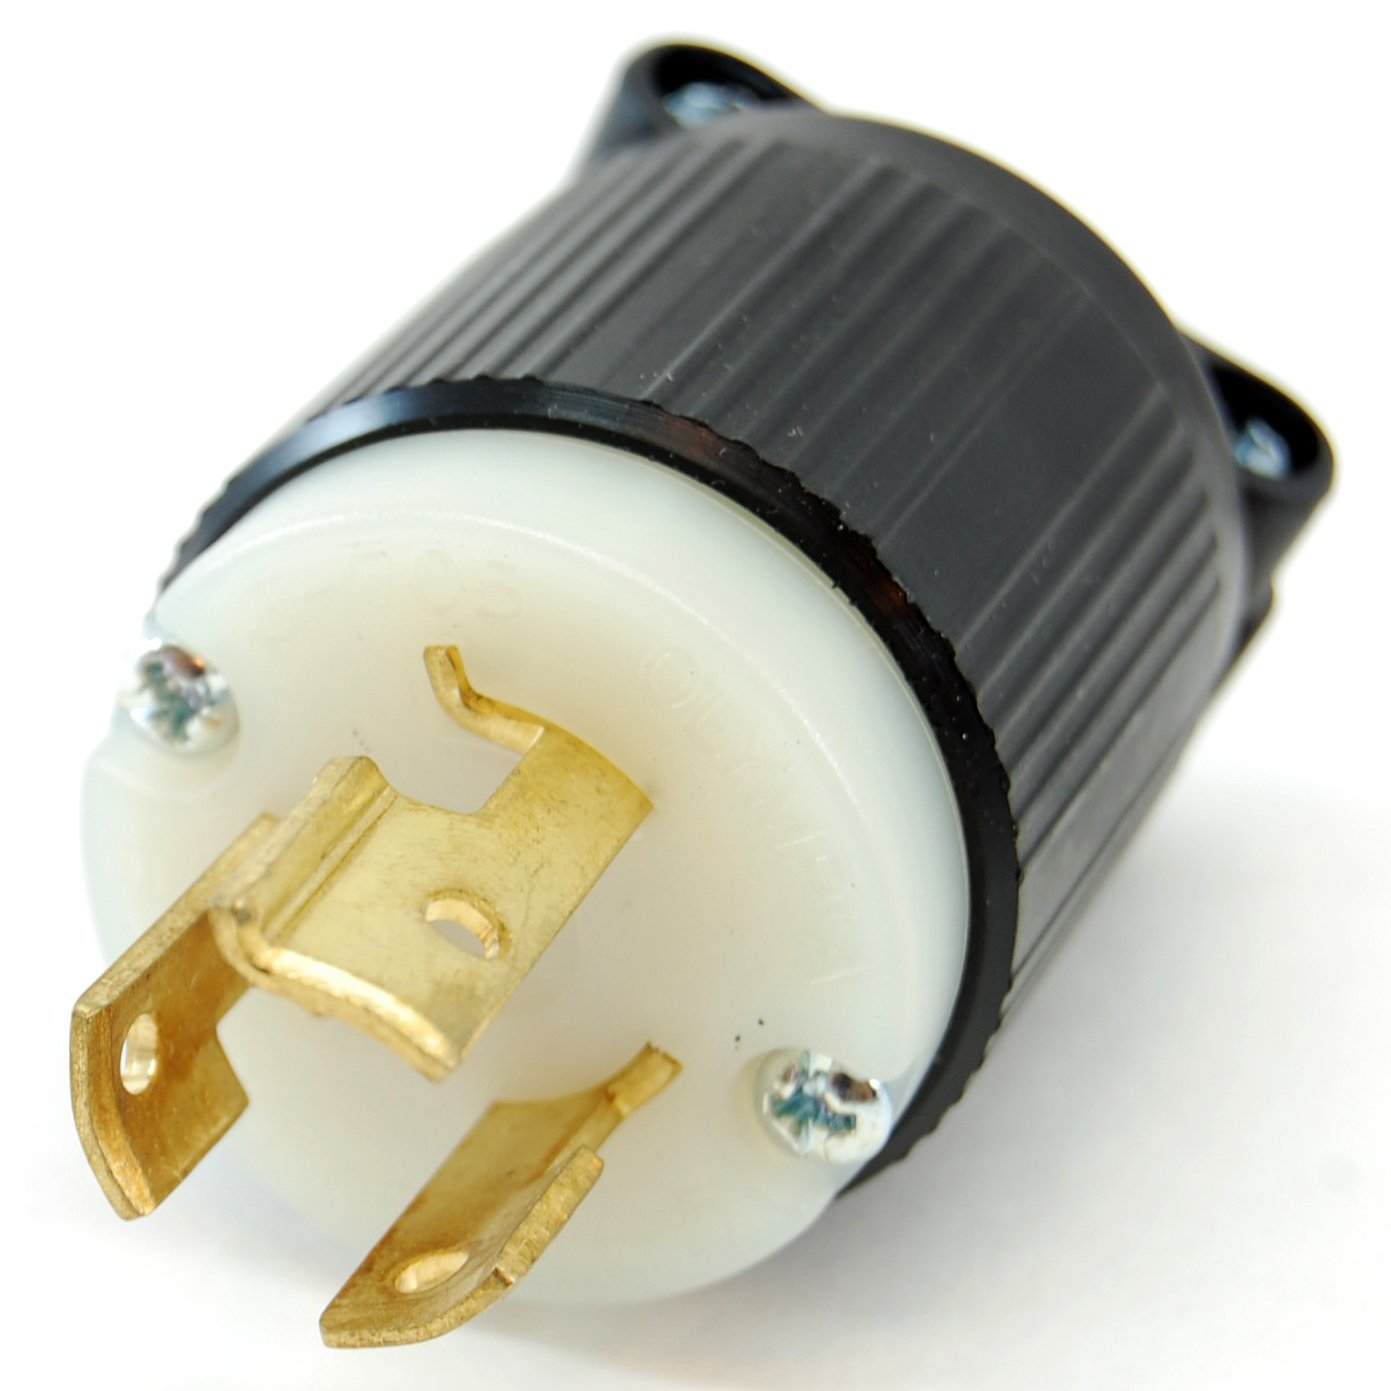 NEMA-L6-15-250VAC-15A-twist-lock-electrical-male-plug_2048x.jpg